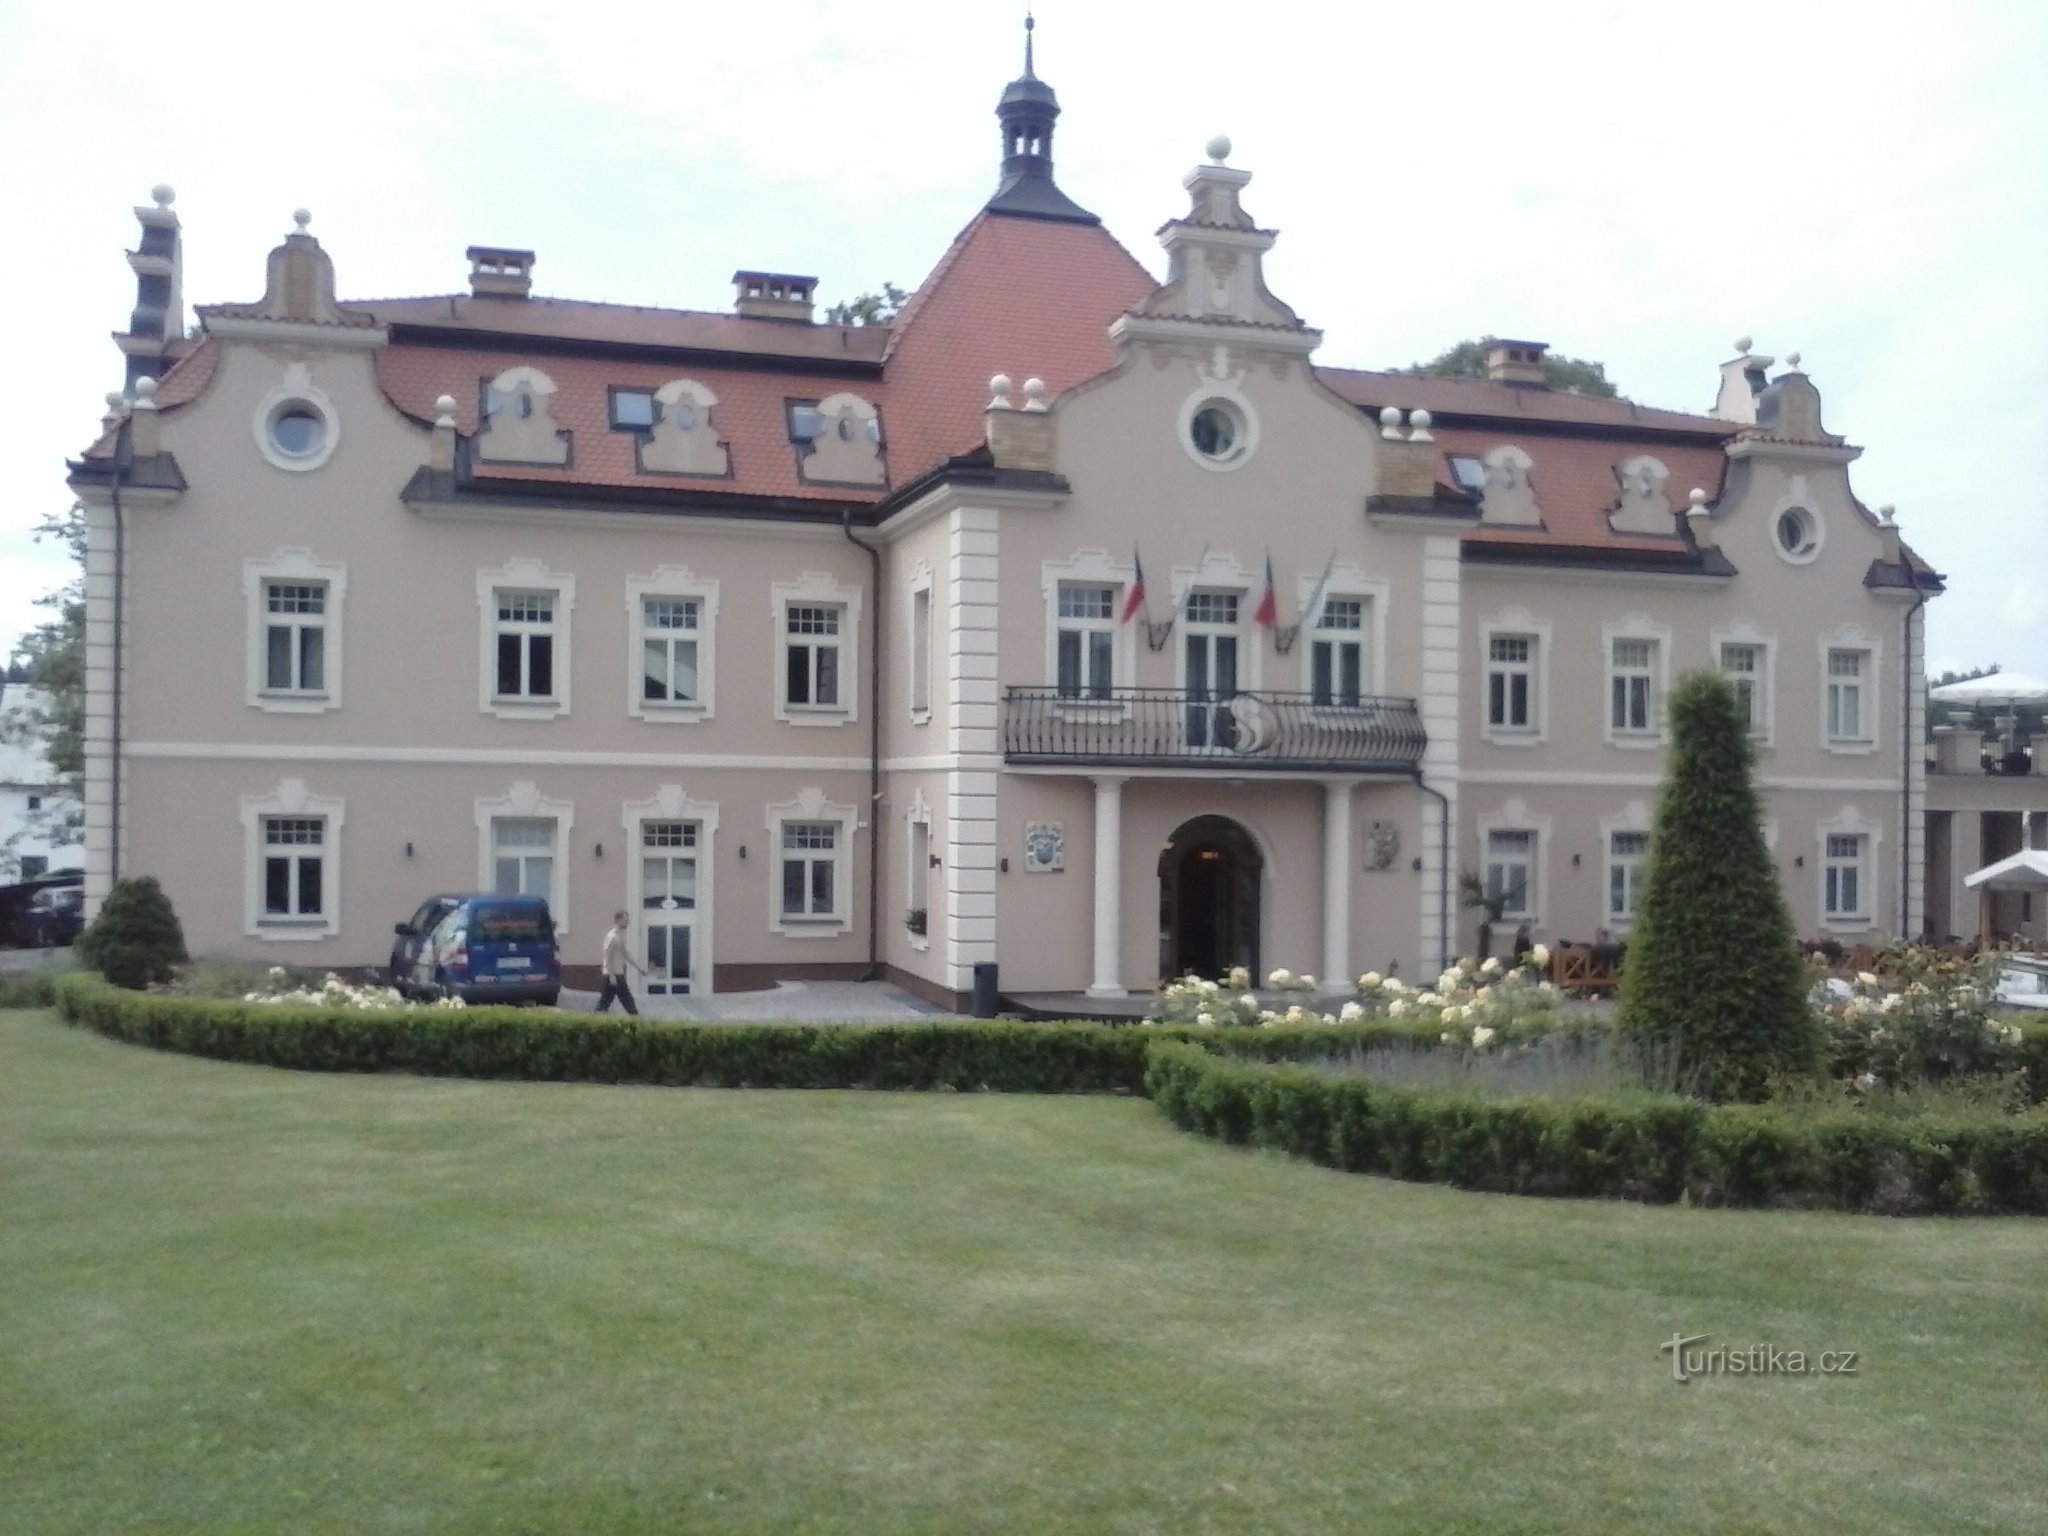 L'actuel château de Berchtold